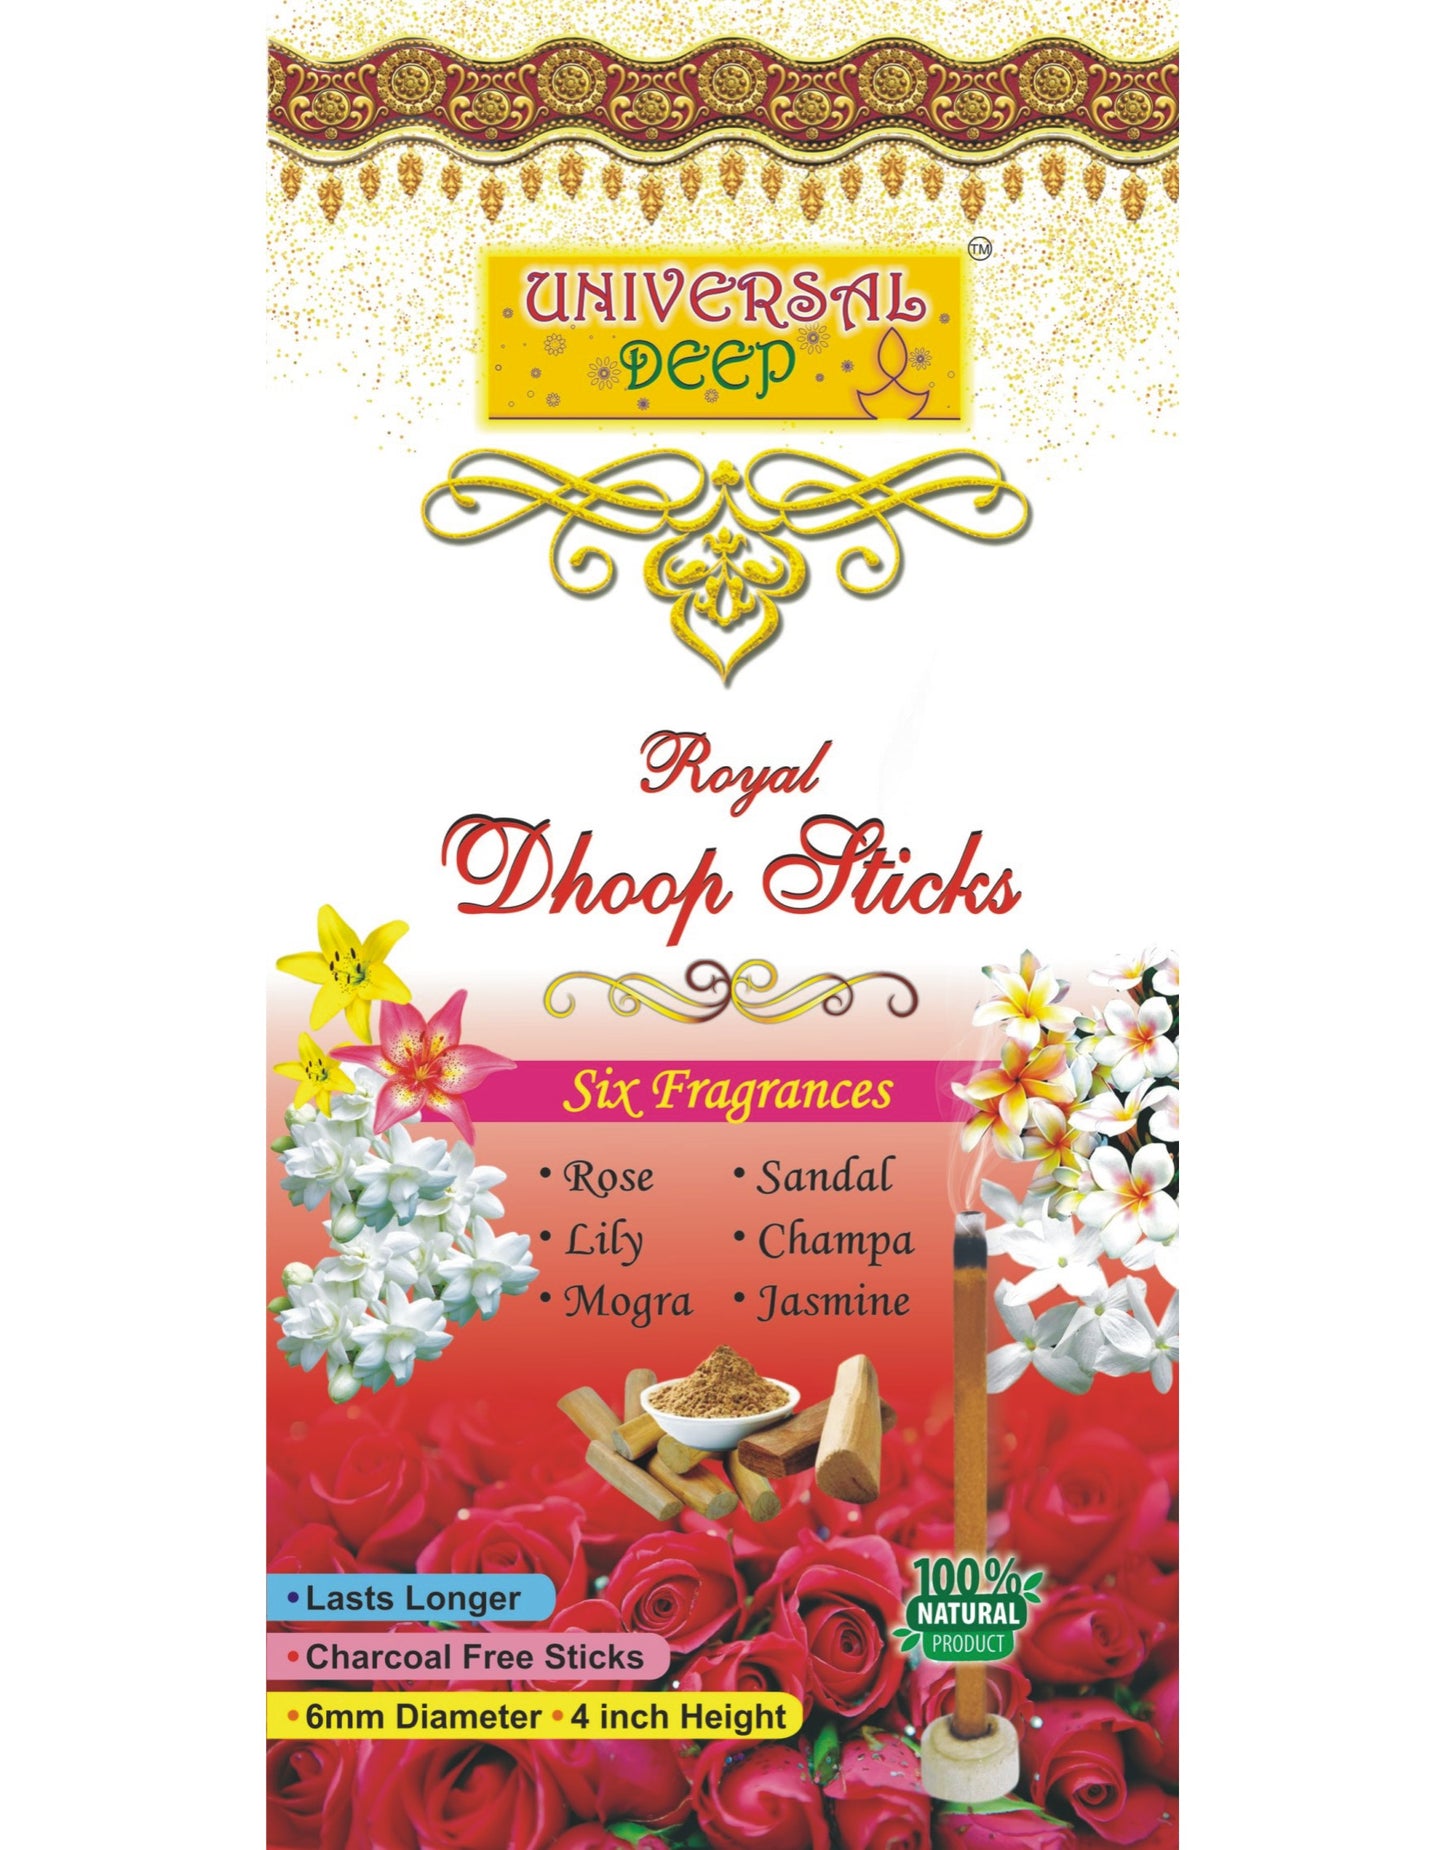 Universal Deep Dhoop Sticks 6in1 Fragrance Pack (Stel van 12 Bokse met 20 stokkies elk, 2 Box elk vir al 6 Fragrance-Sandal, Rose, Lily, Mogra, Jasmine, Champa)